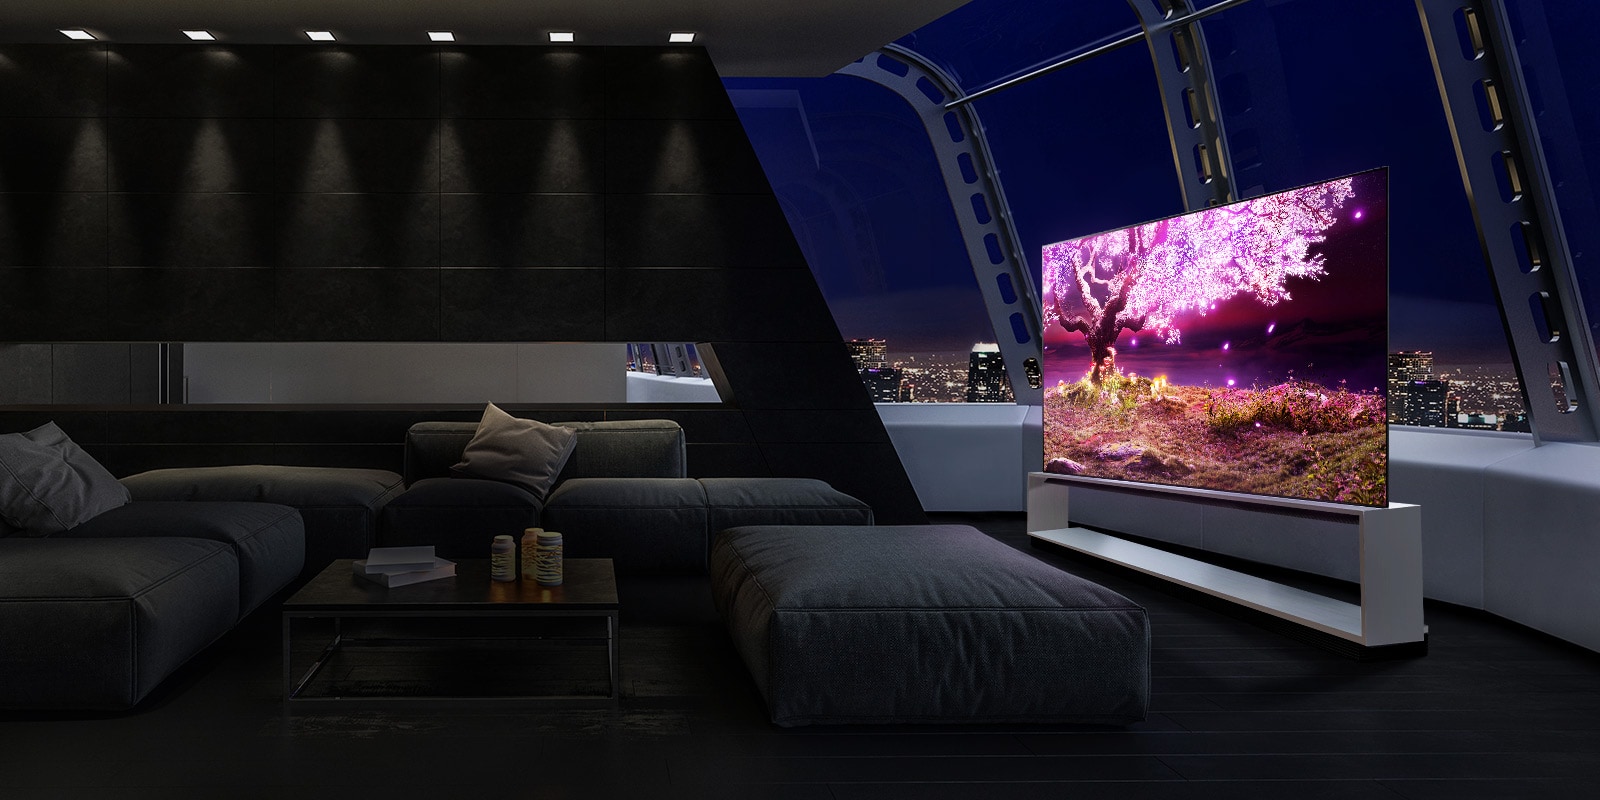 Телевизор на стойке в современном интерьере, на экране которого демонстрируется дерево на темном фоне, излучающее фиолетовый свет